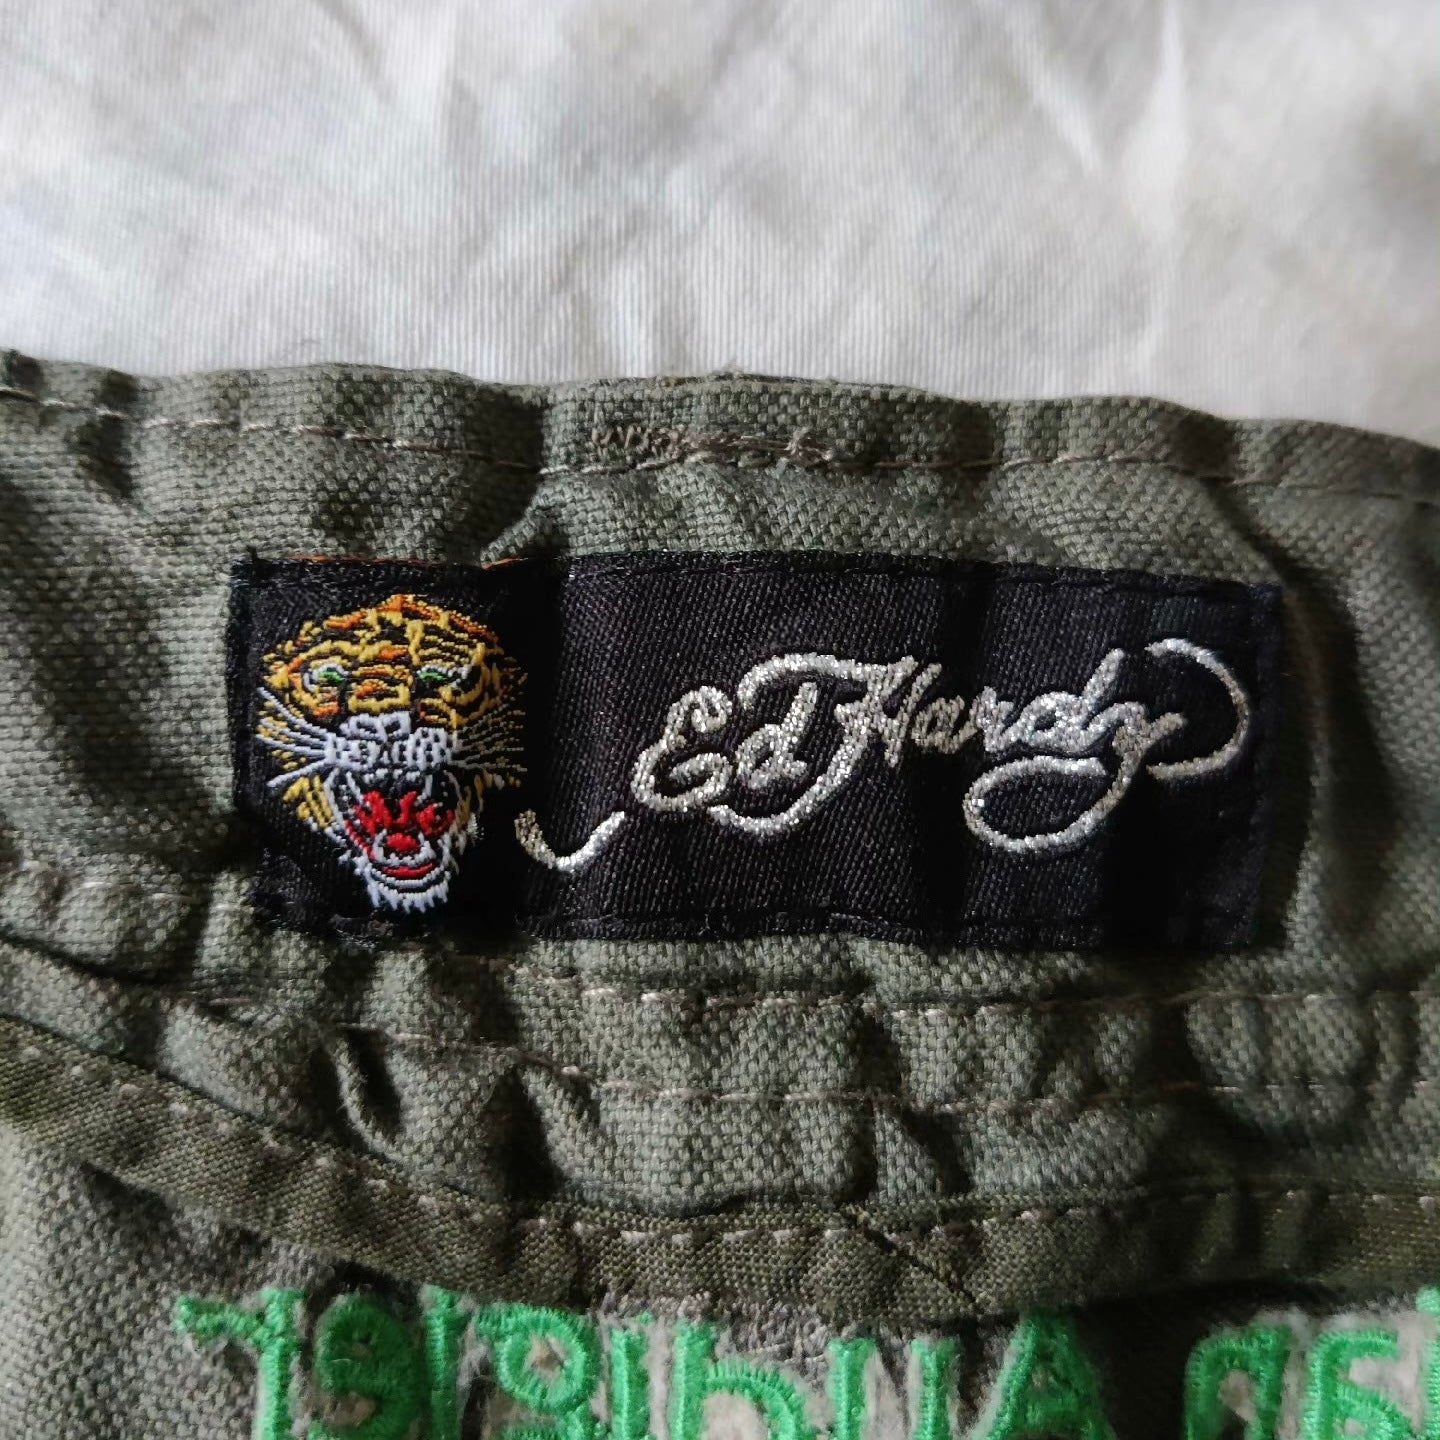 Vintage Ed Hardy Embroidery Cargo Shorts Wholesale Bundle - 5 Pairs